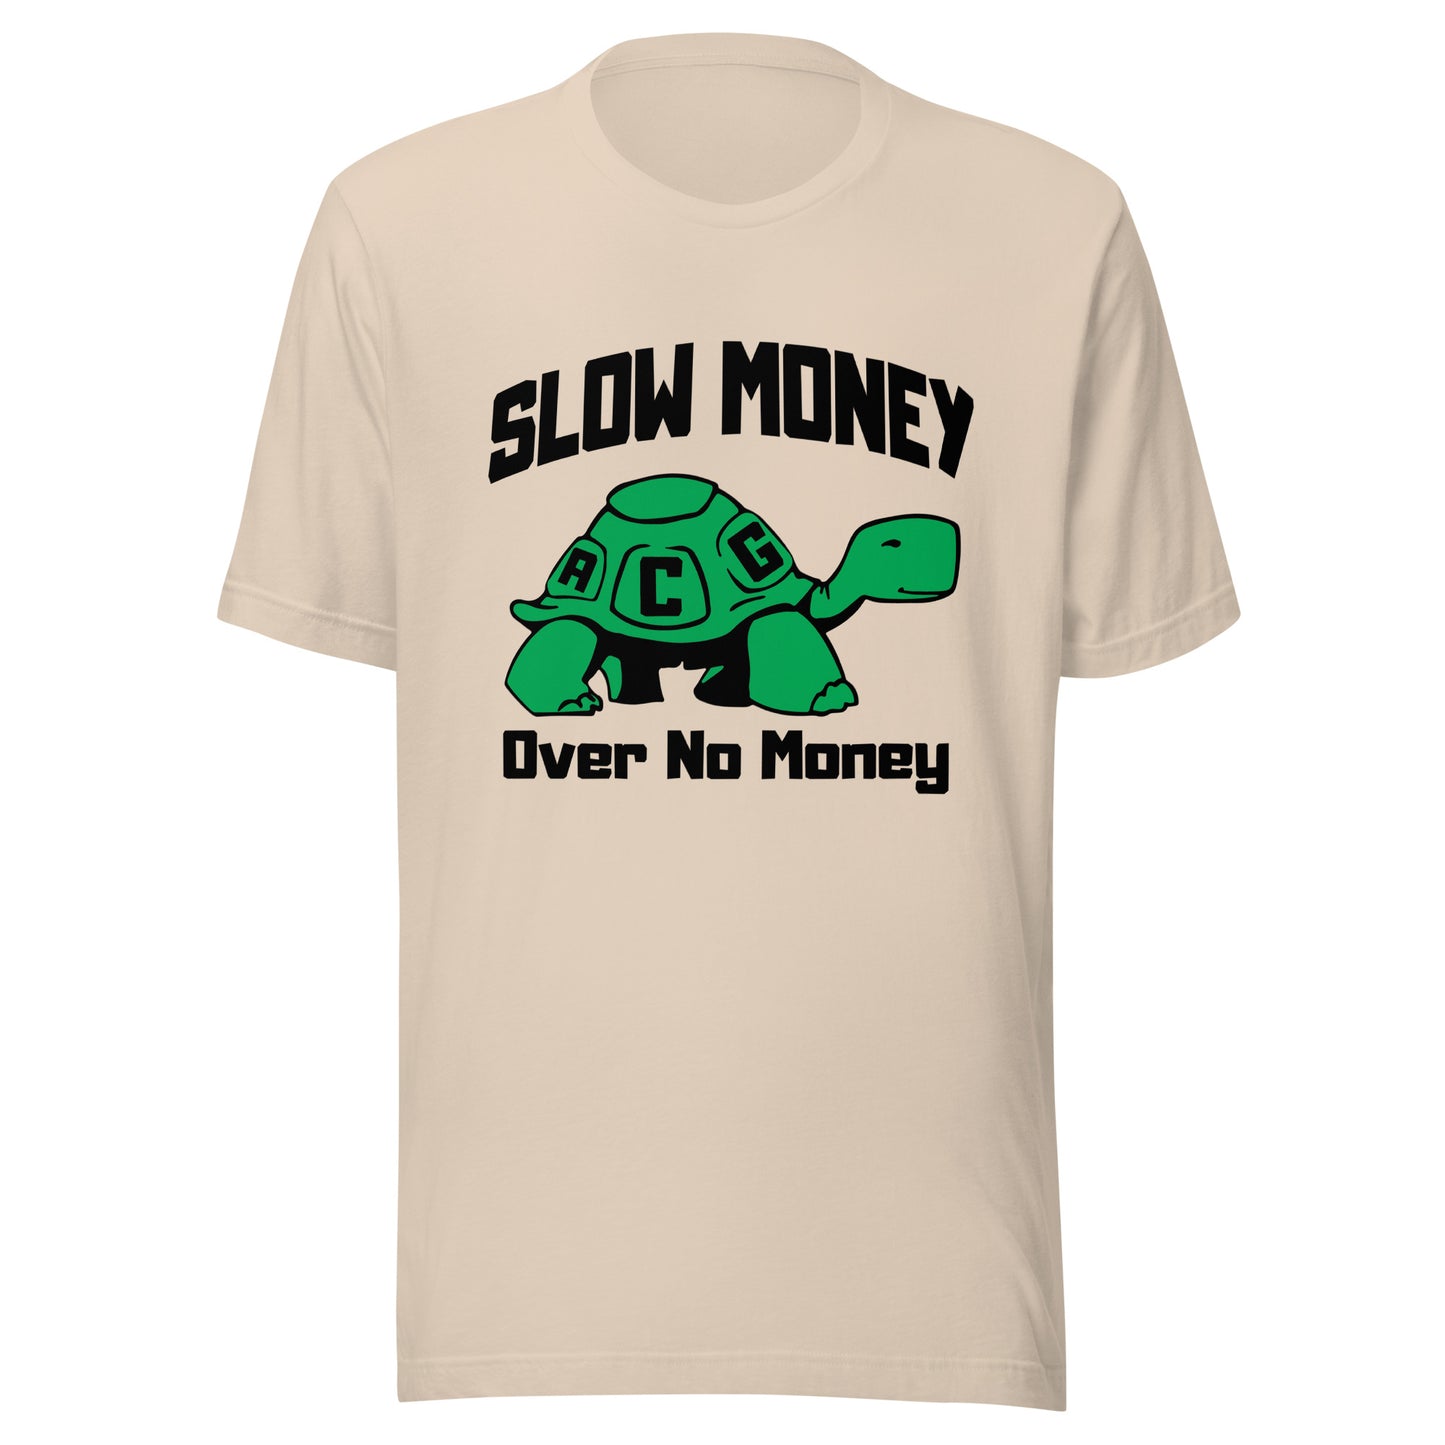 Slow money(black letters) Unisex t-shirt